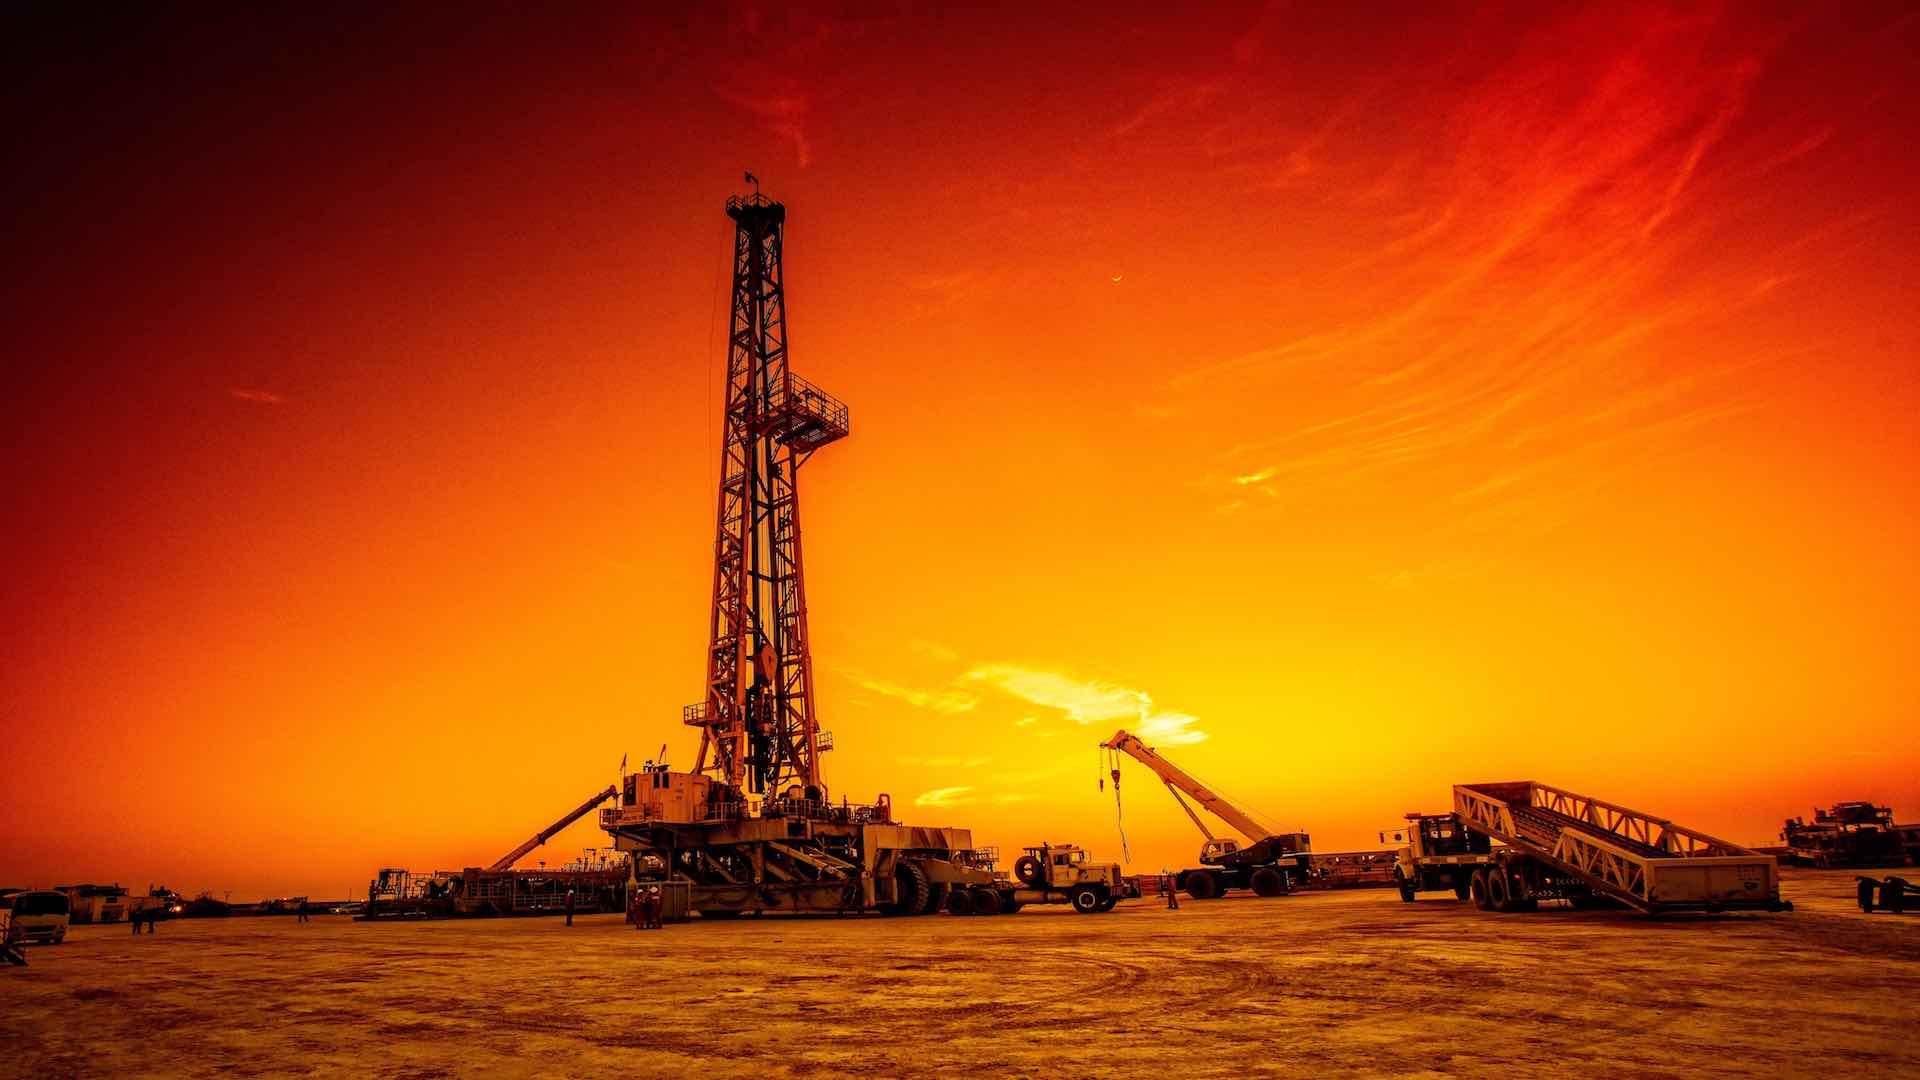 אנליסטים צופים מחירי נפט של 90 דולר עקב עלייה בסכסוכים במזרח התיכון